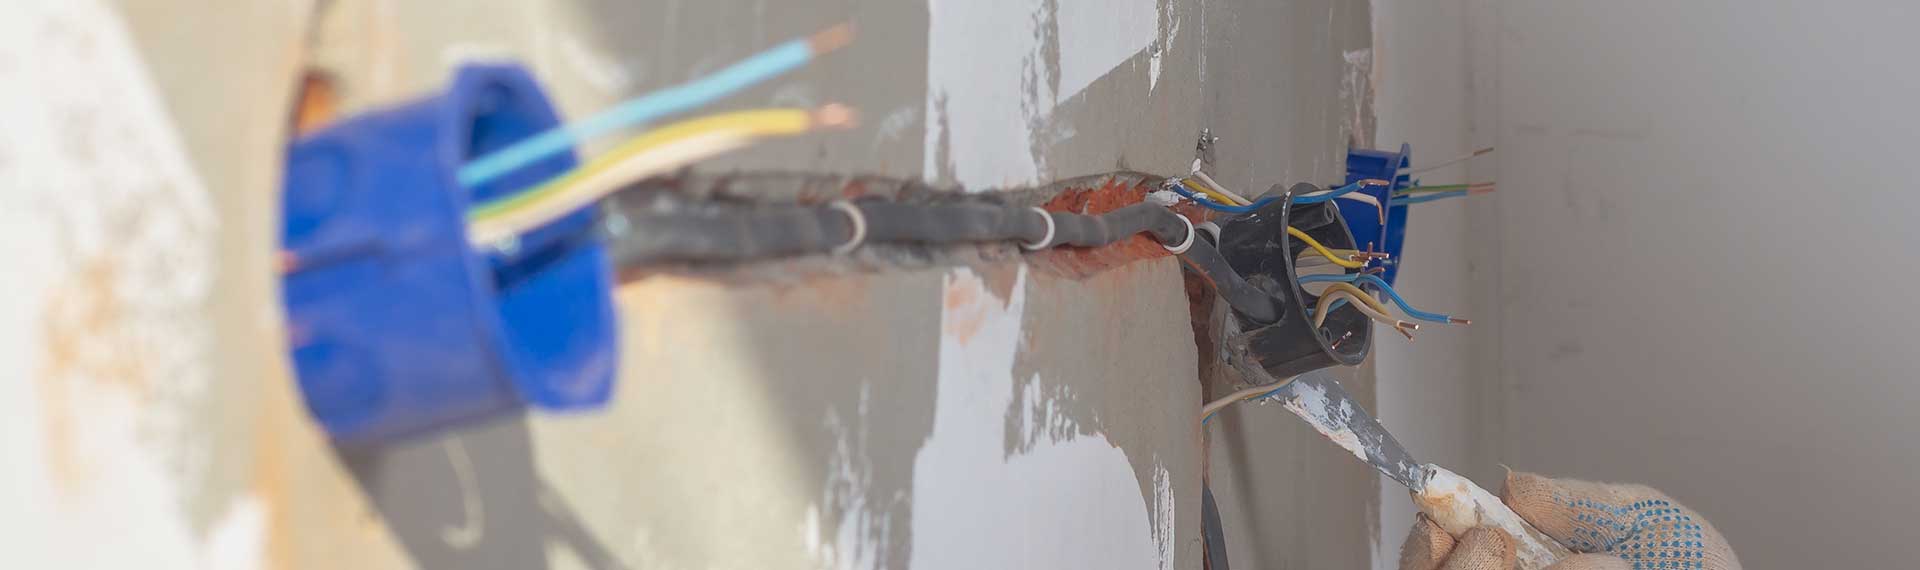 Verlegung von Kabeln auf Traversen in Leerrohren und Kabelschlitzen in Gebäuden nach vorgegebenen Plänen von lizensierten Unternehmen!